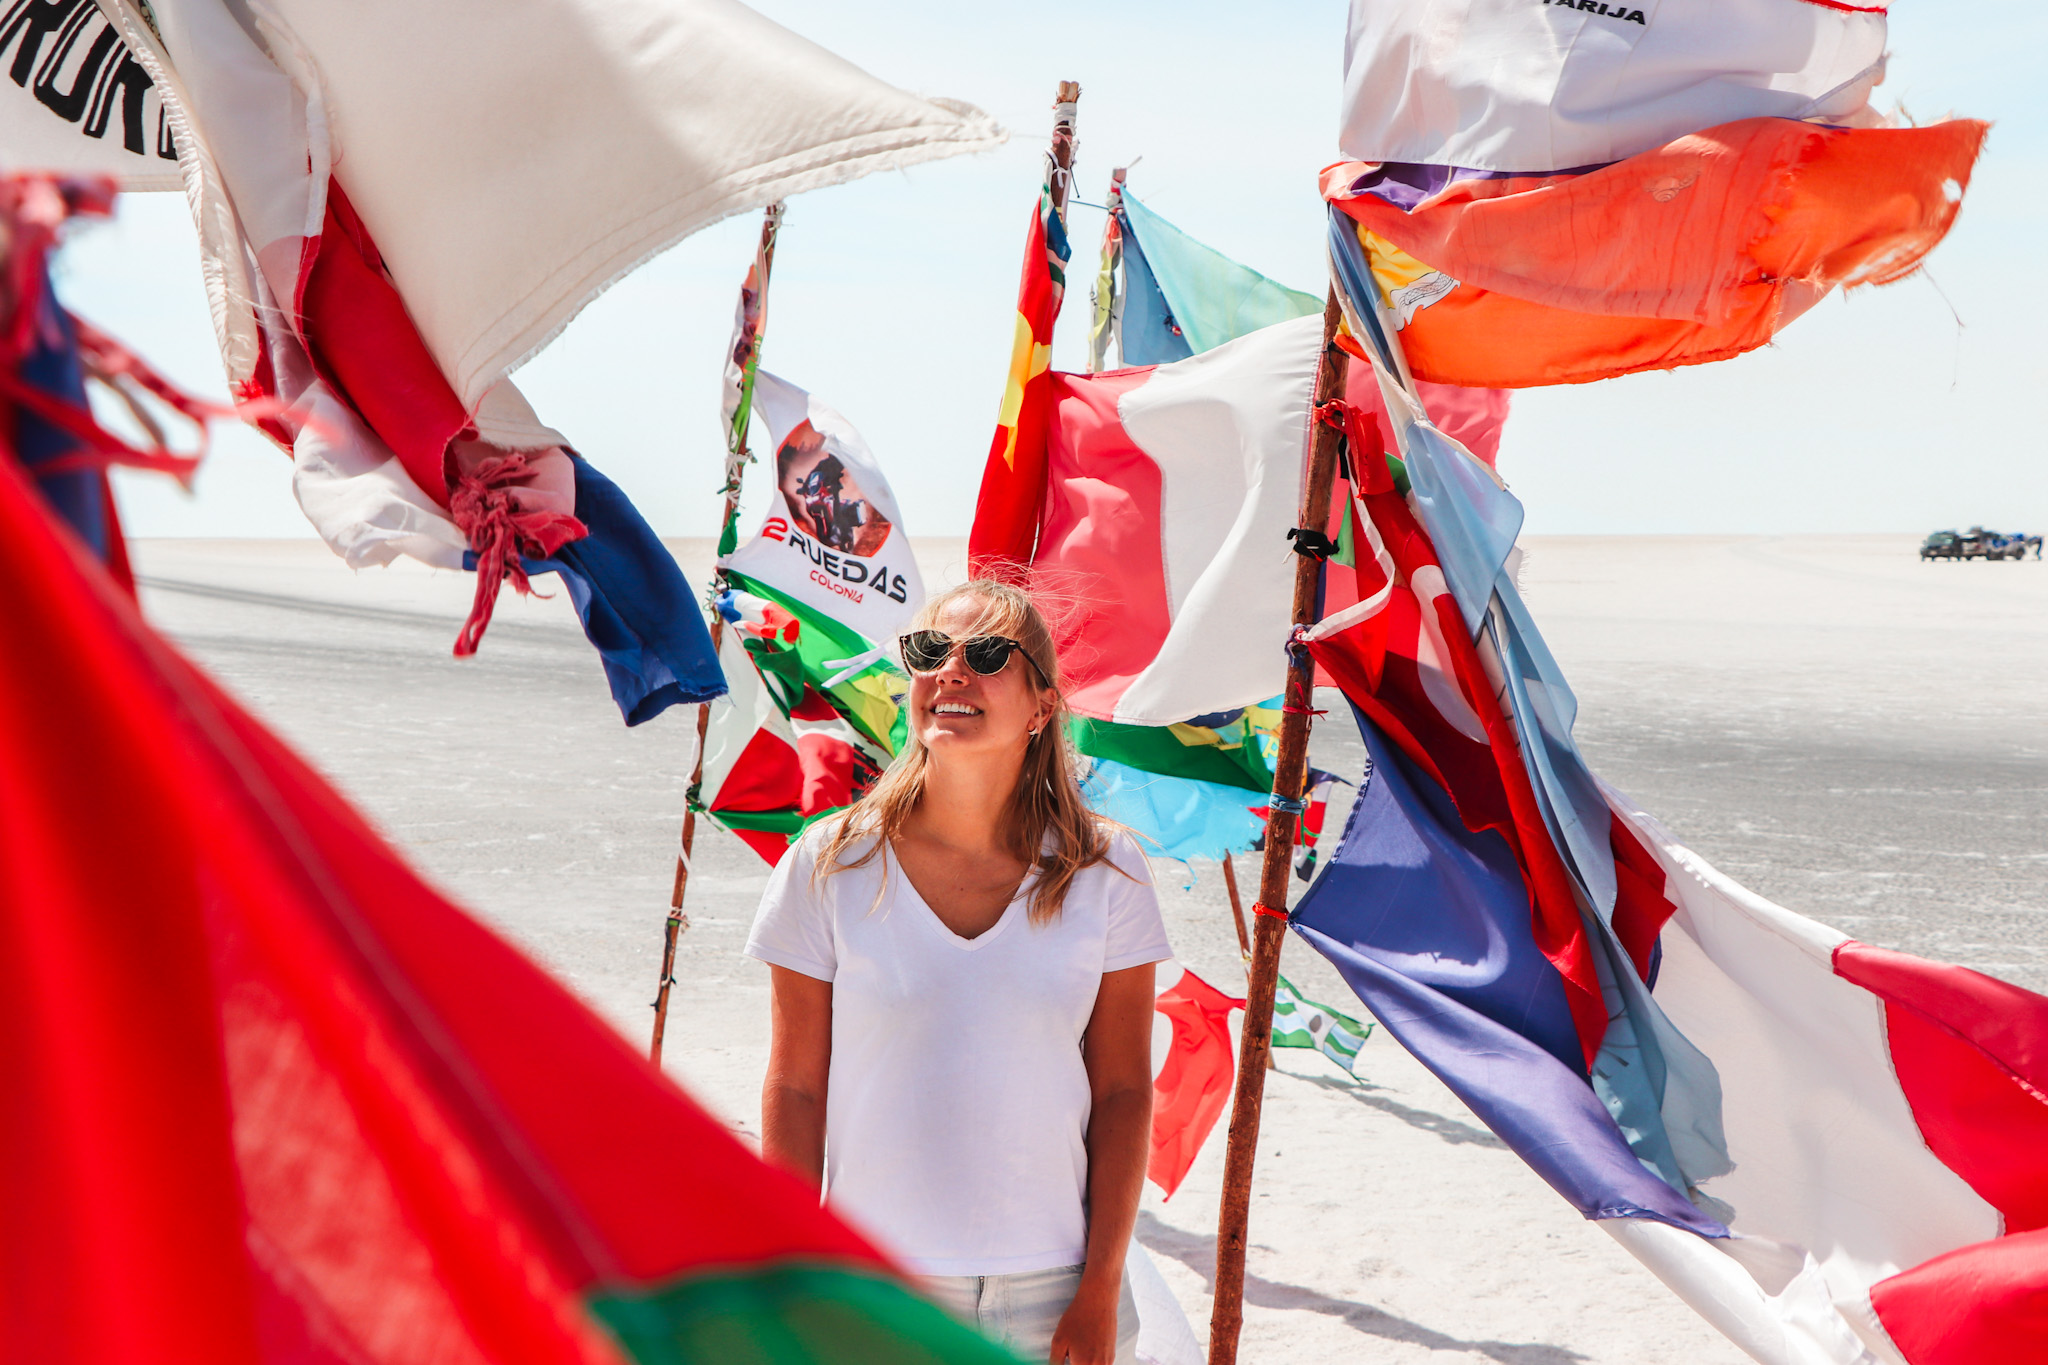 Uyuni Travel Guide: International Flags in Salar de Uyuni